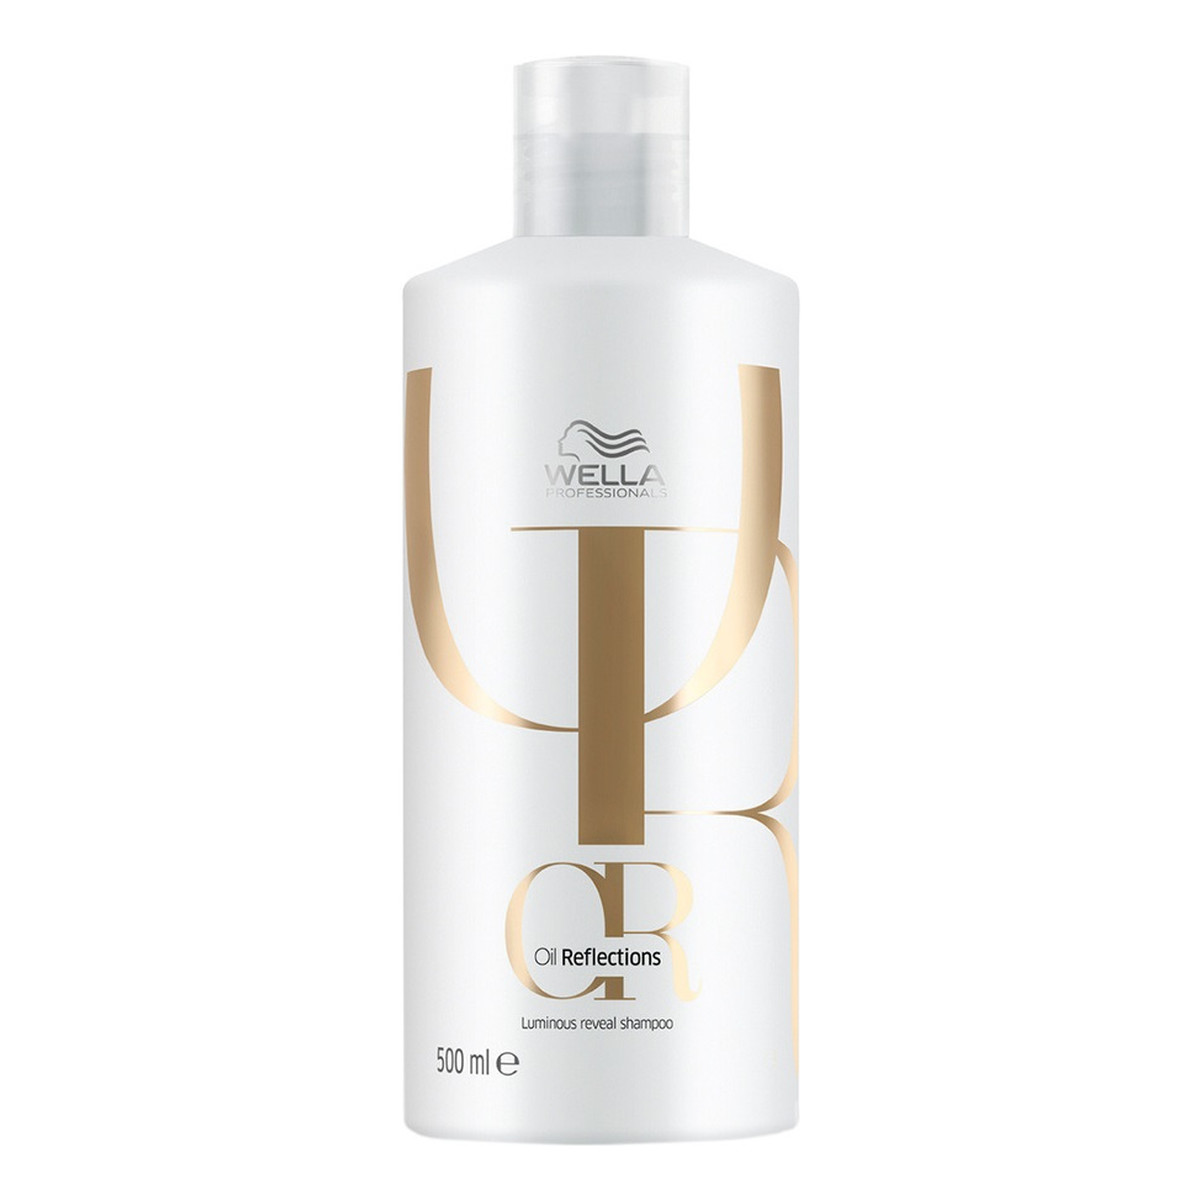 Wella Professionals Oil reflections luminous reveal shampoo delikatny szampon nawilżający do włosów 500ml